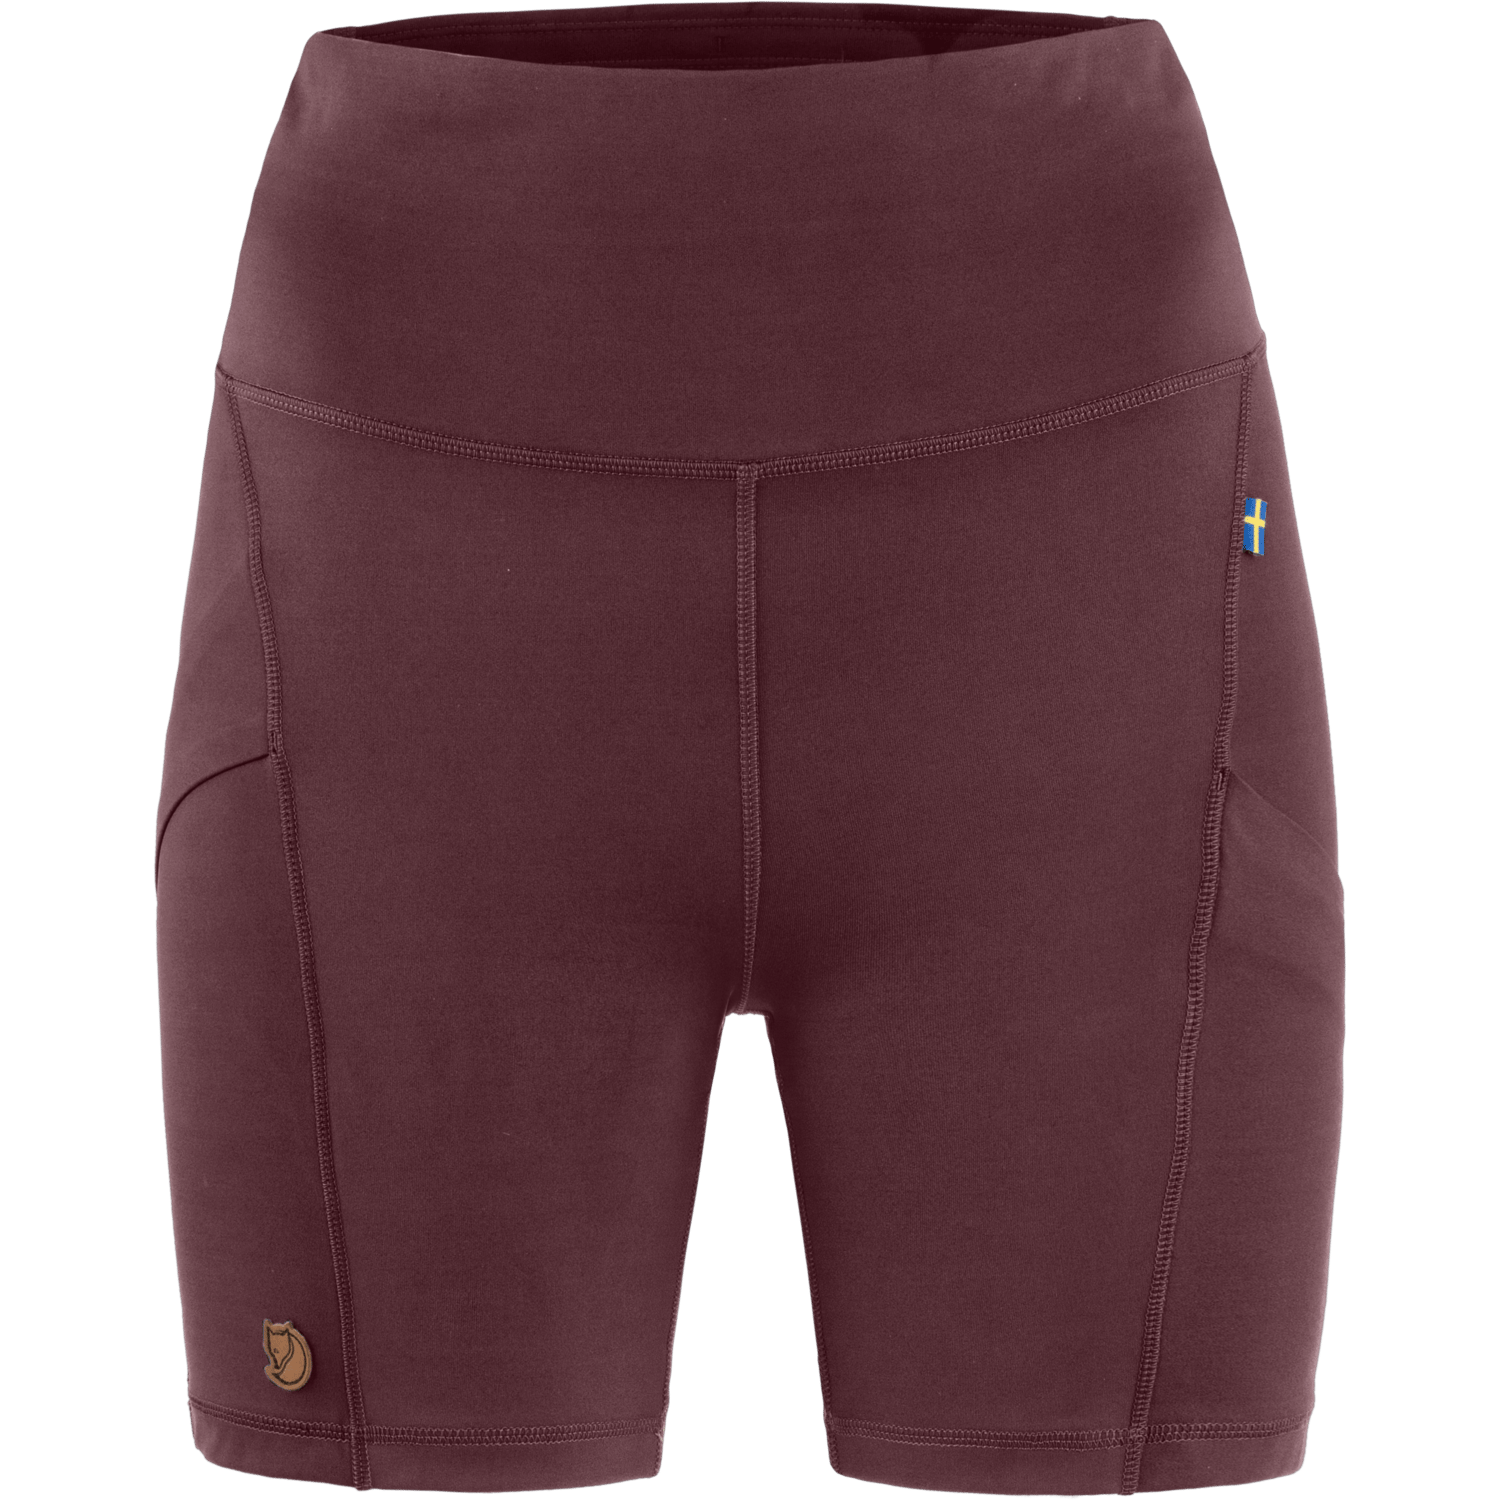 Fjällräven Women's Abisko 6 inch Shorts Tights Port